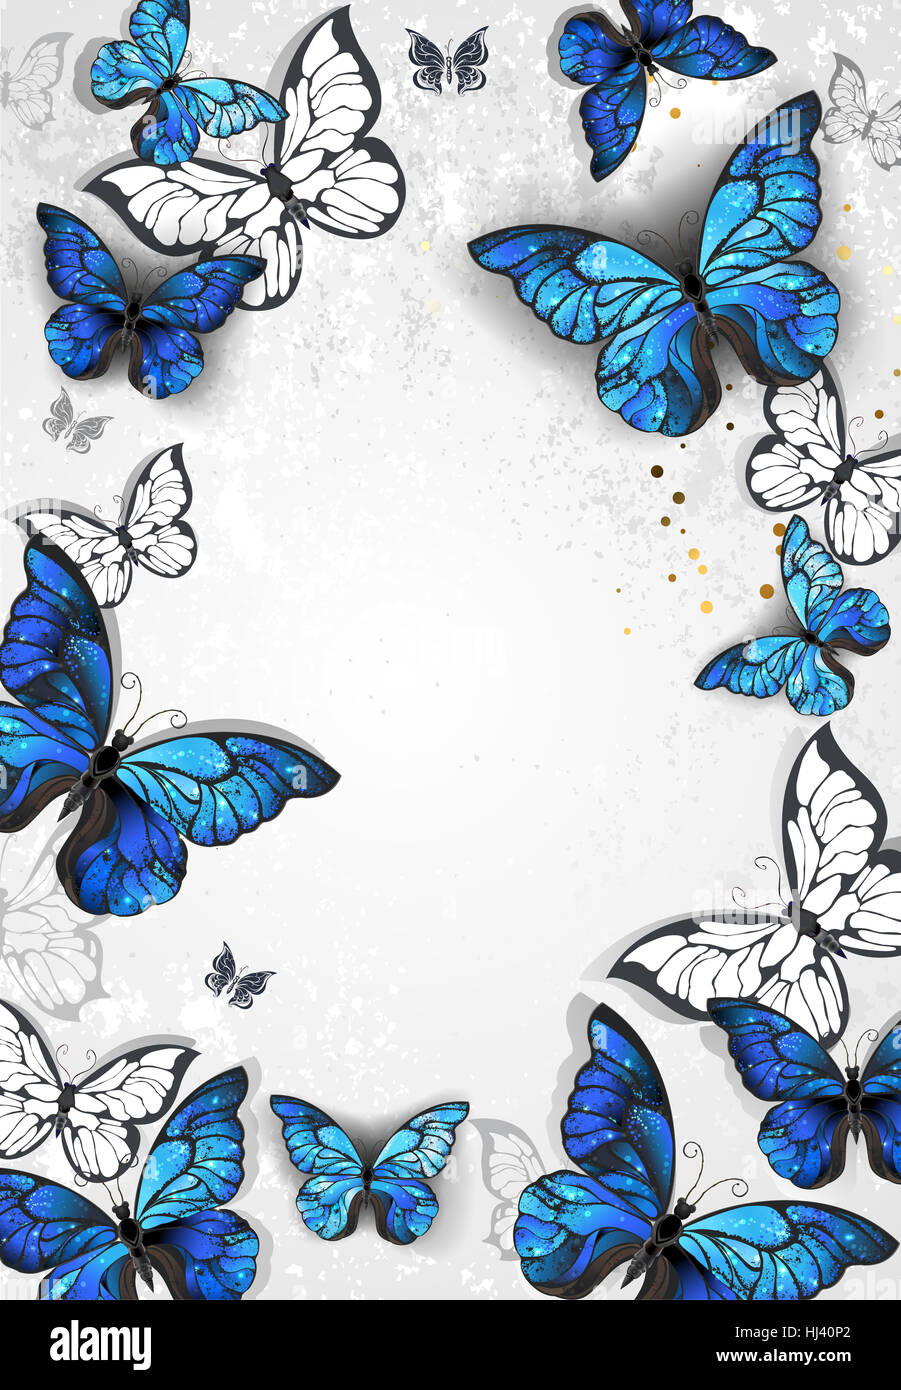 Rahmen mit blauen realistische Morpho Schmetterlinge auf grauem Hintergrund Textur. Design mit Schmetterlingen. Morpho. Design mit blauer Schmetterlinge Morpho. Stockfoto